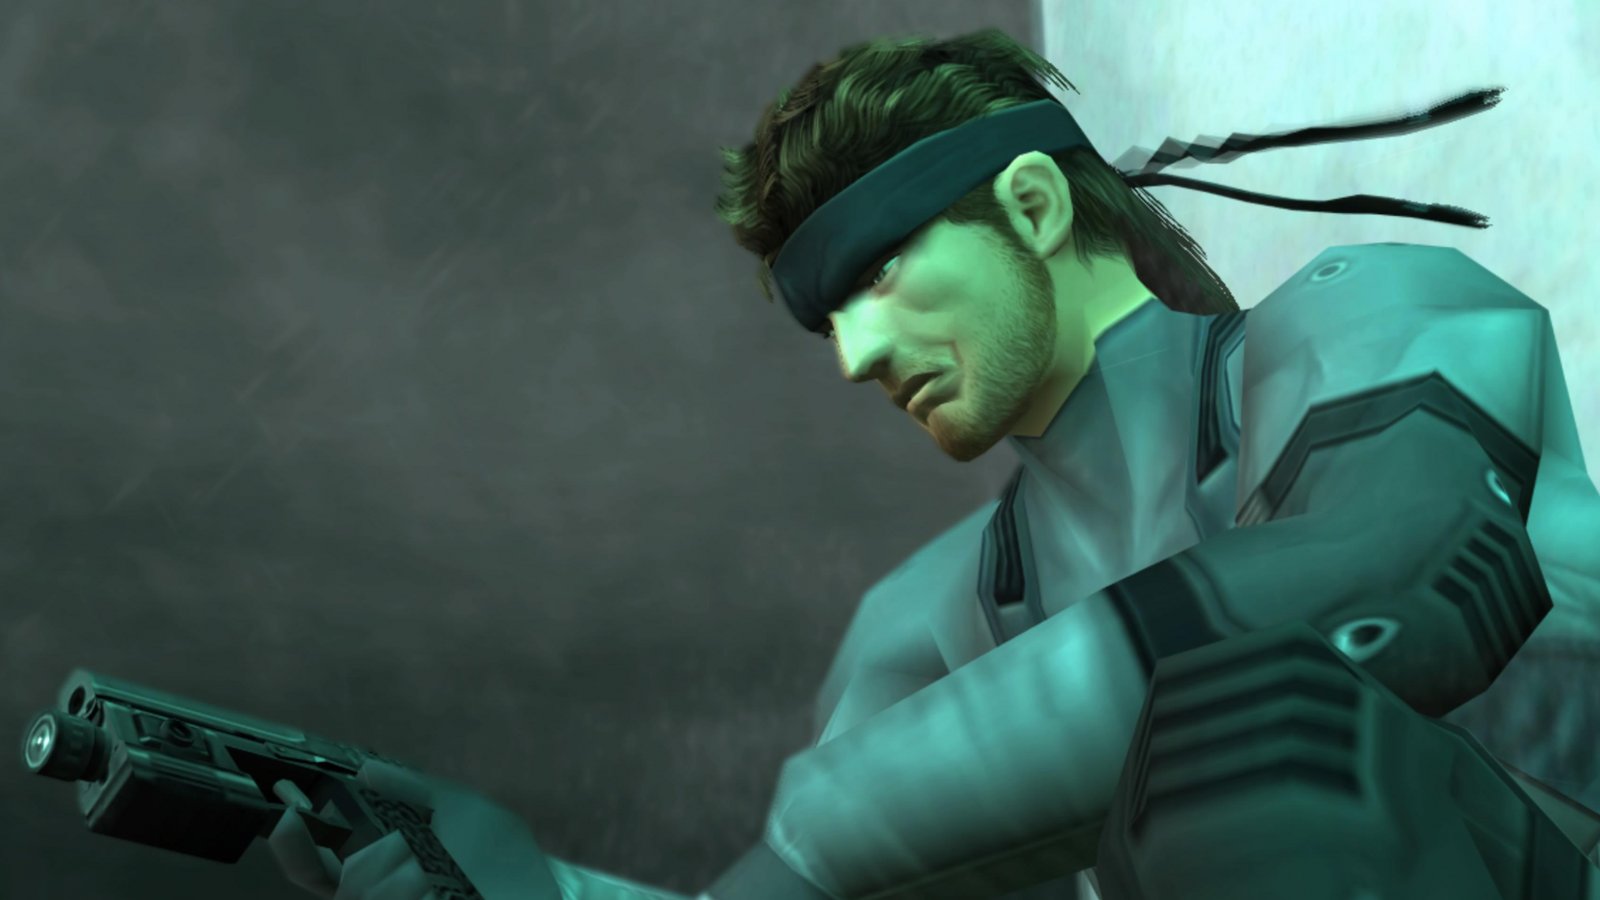 Metal Gear Solid Legacy Series Part 1: David Hayter parla delle origini della serie senza citare Kojima